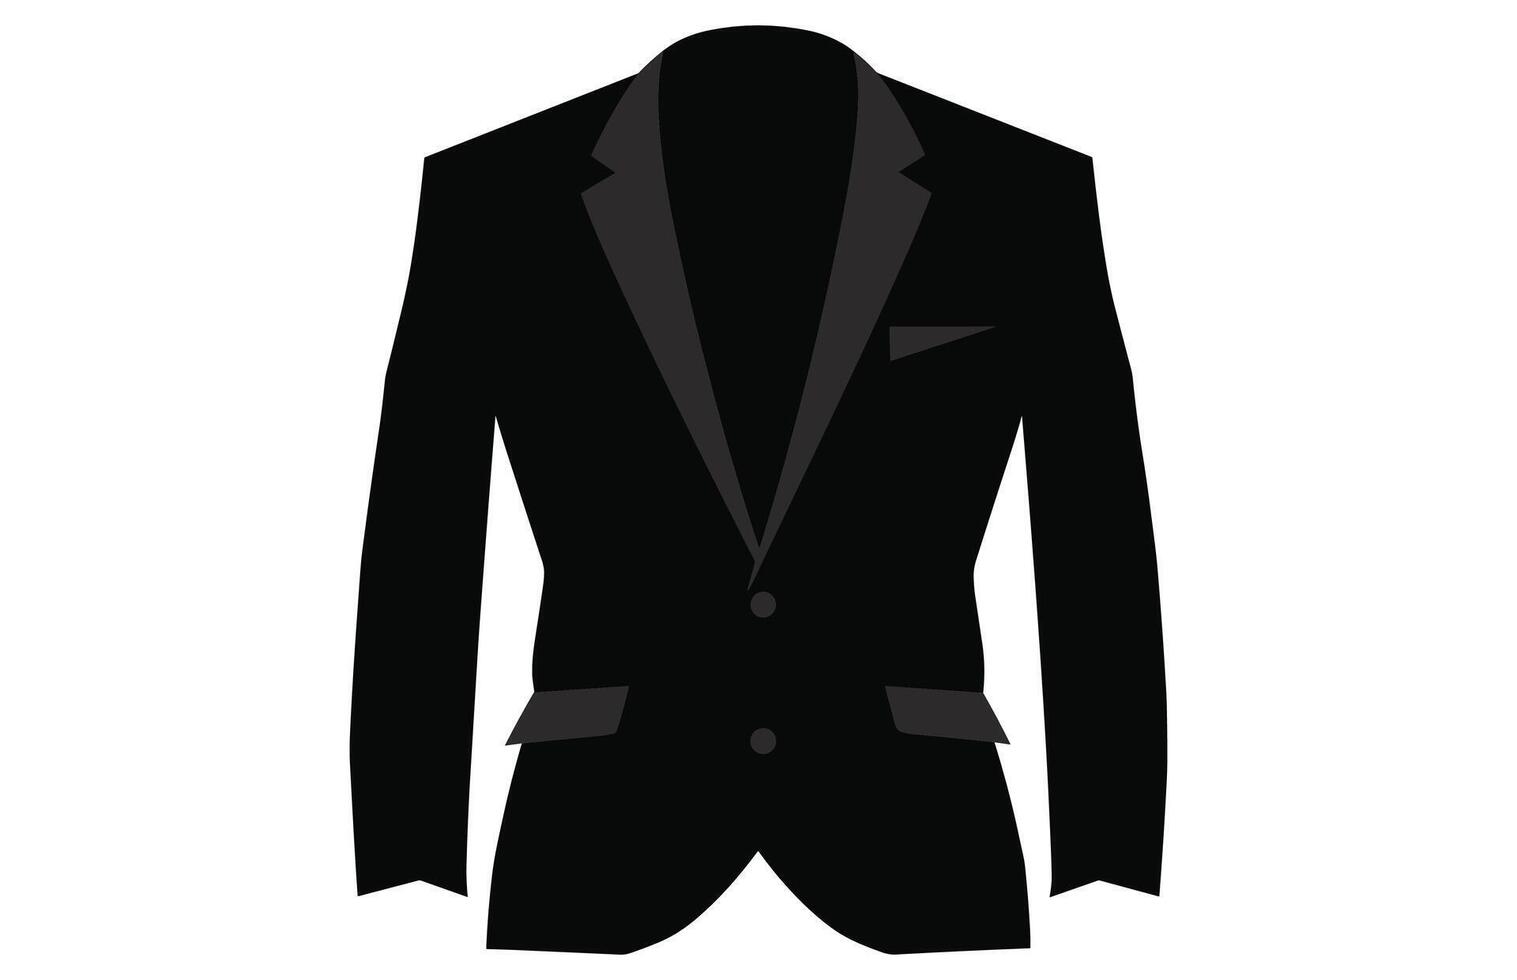 kostym siluett, män blazer eller jacka symbol enkel silhuett ikon på bakgrund vektor